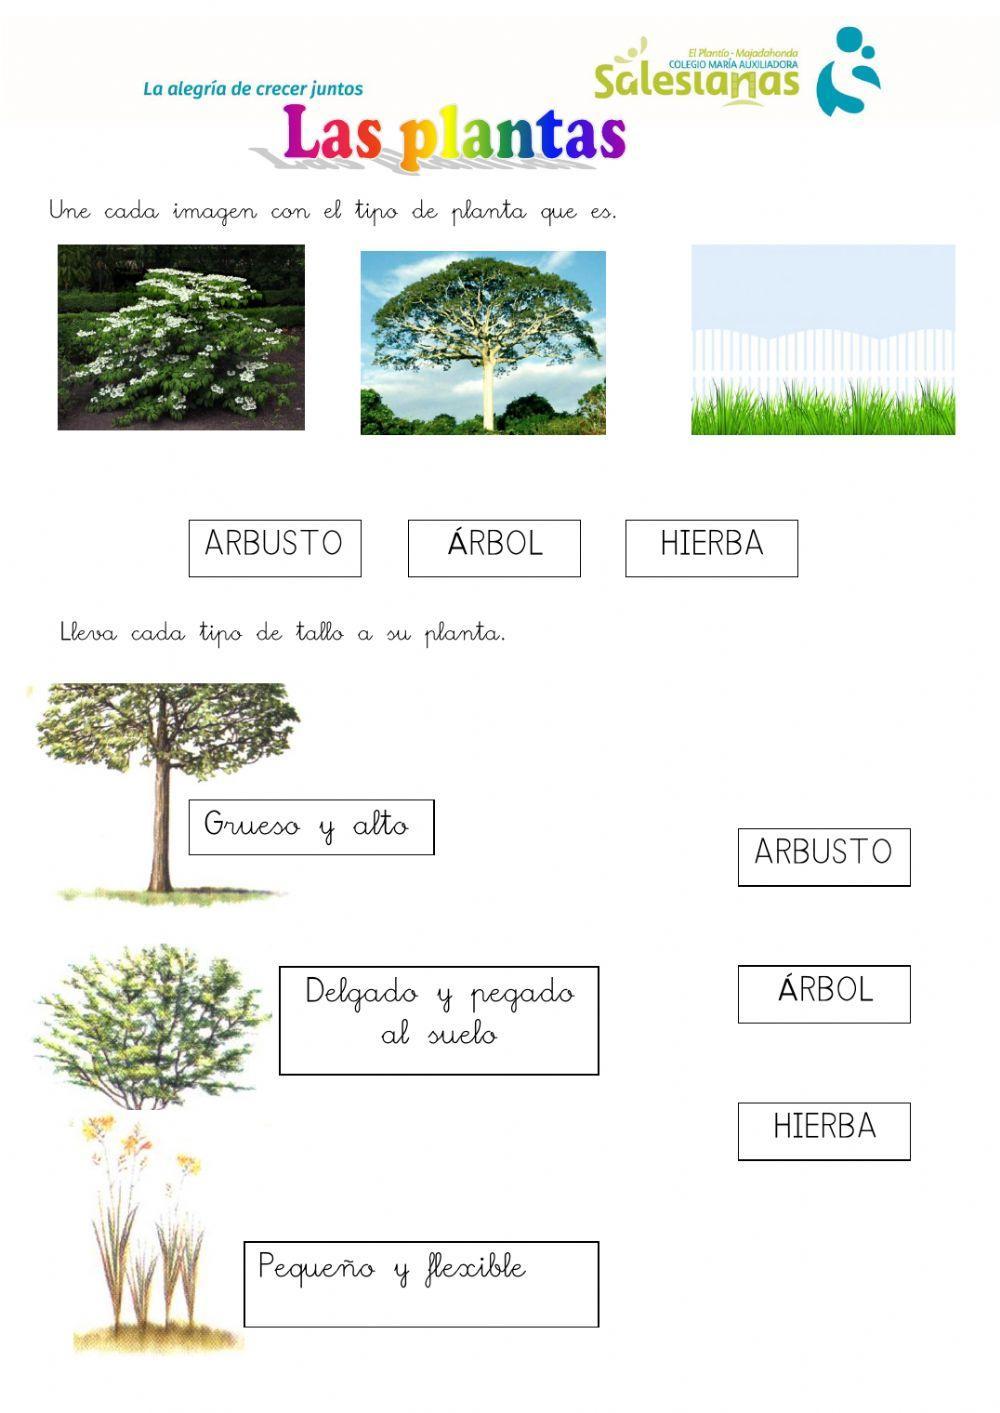 Tipos de plantas